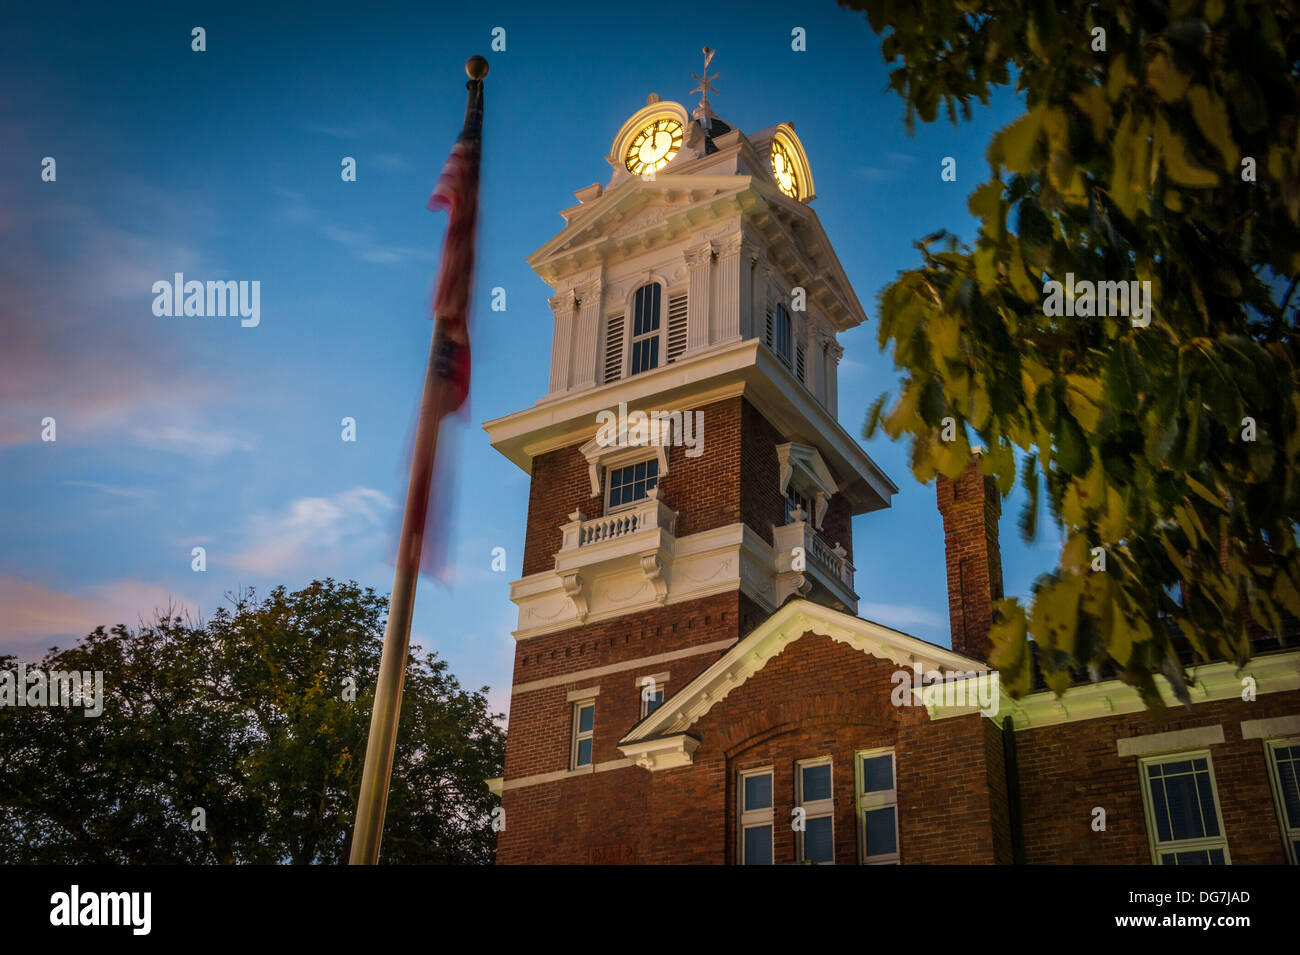 Les horloges brillent dans les teintes profondes du crépuscule dans le beffroi du palais de justice historique de Gwinnett à Lawrenceville, en Géorgie, près d'Atlanta. (ÉTATS-UNIS) Banque D'Images